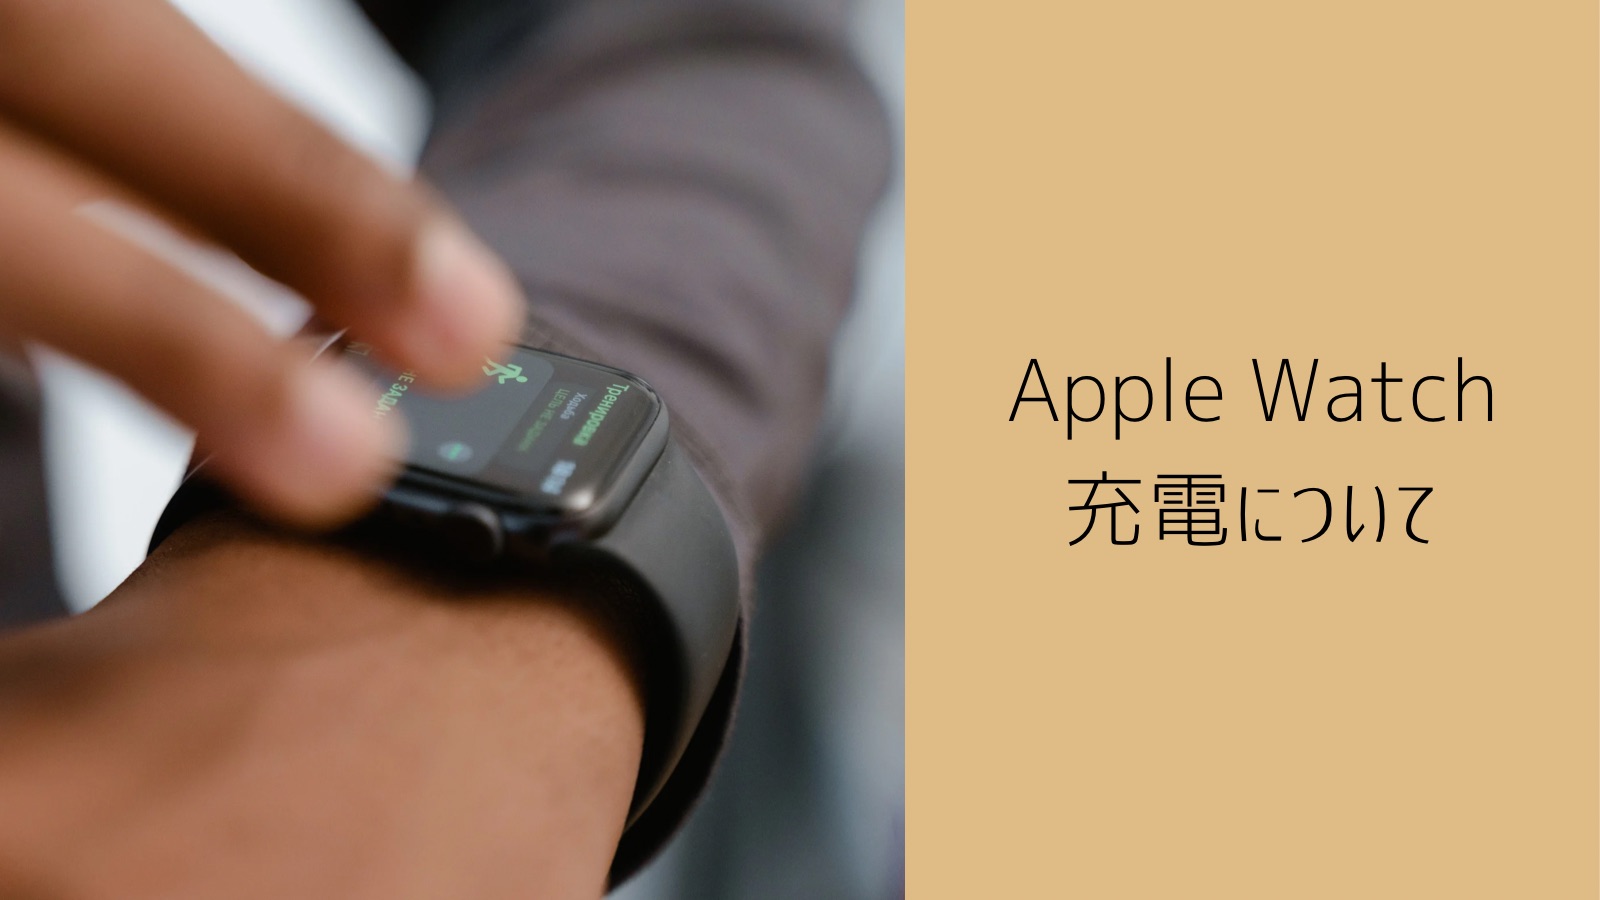 【ご提案】「Apple Watch は充電がめんどくさい」と思う人へ